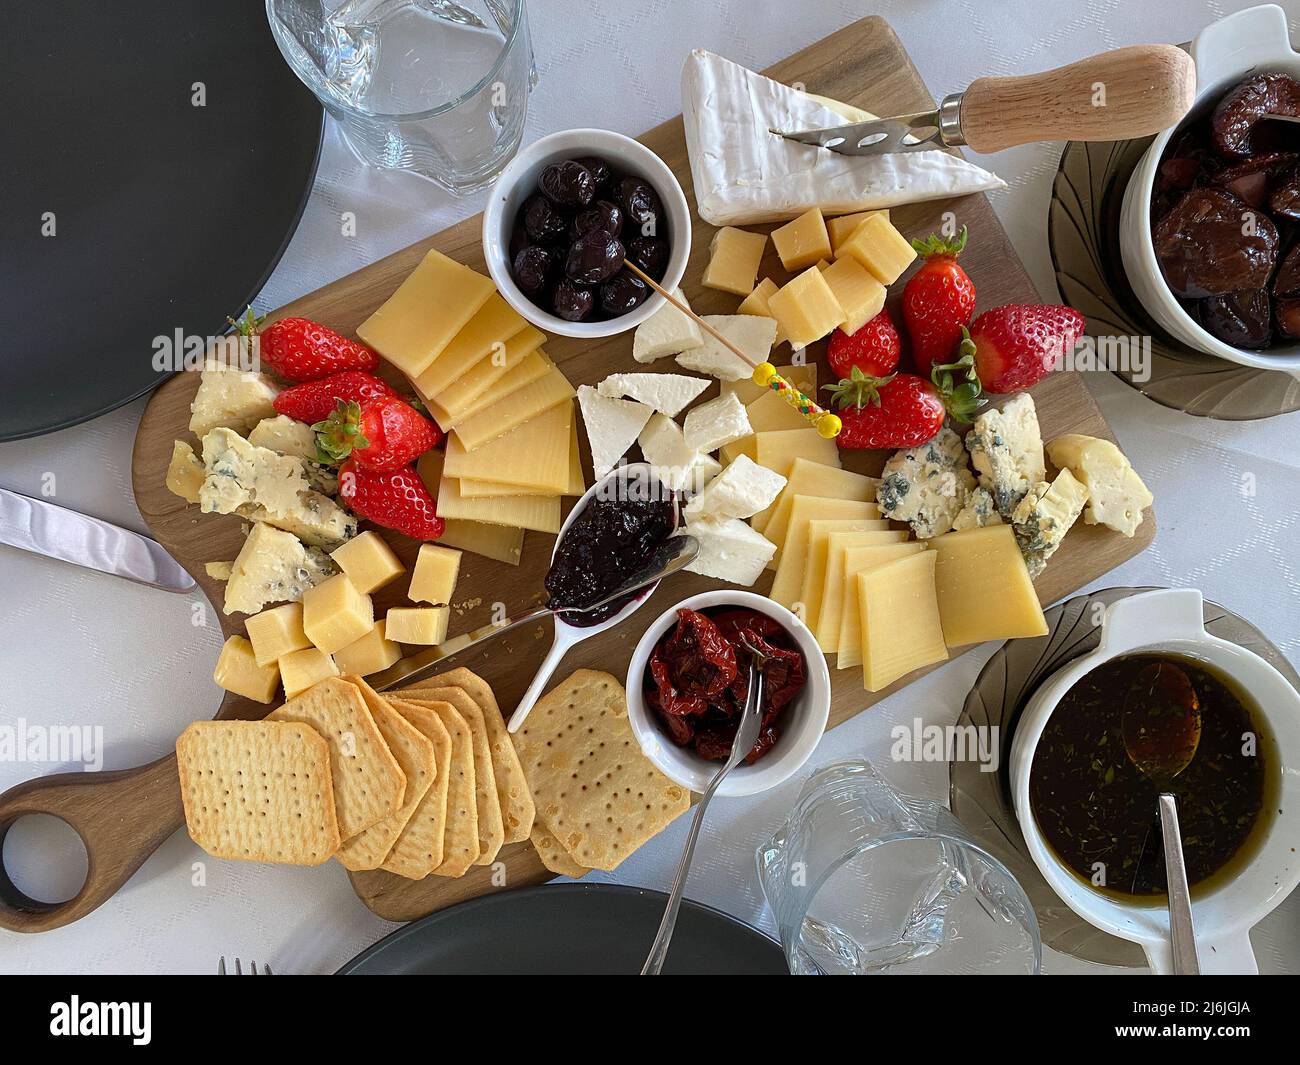 Piatto di formaggi con camembert, brie, dor blue, fragole, pomodori secchi, olive su un tavolo di legno, vista dall'alto. Foto Stock